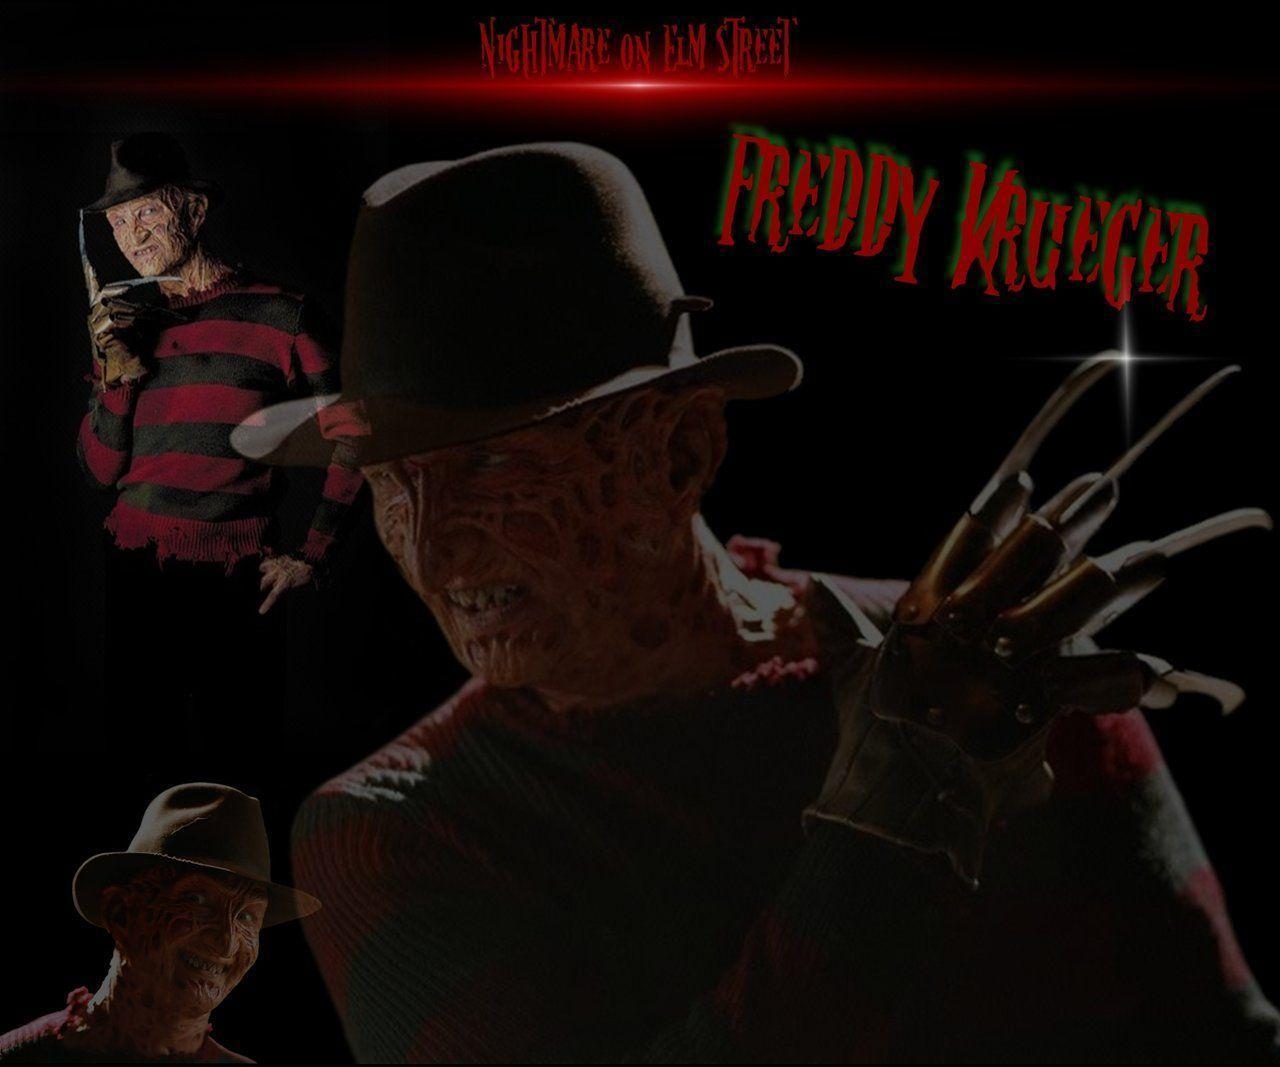 Freddy Krueger wallpapers by firebirdy89